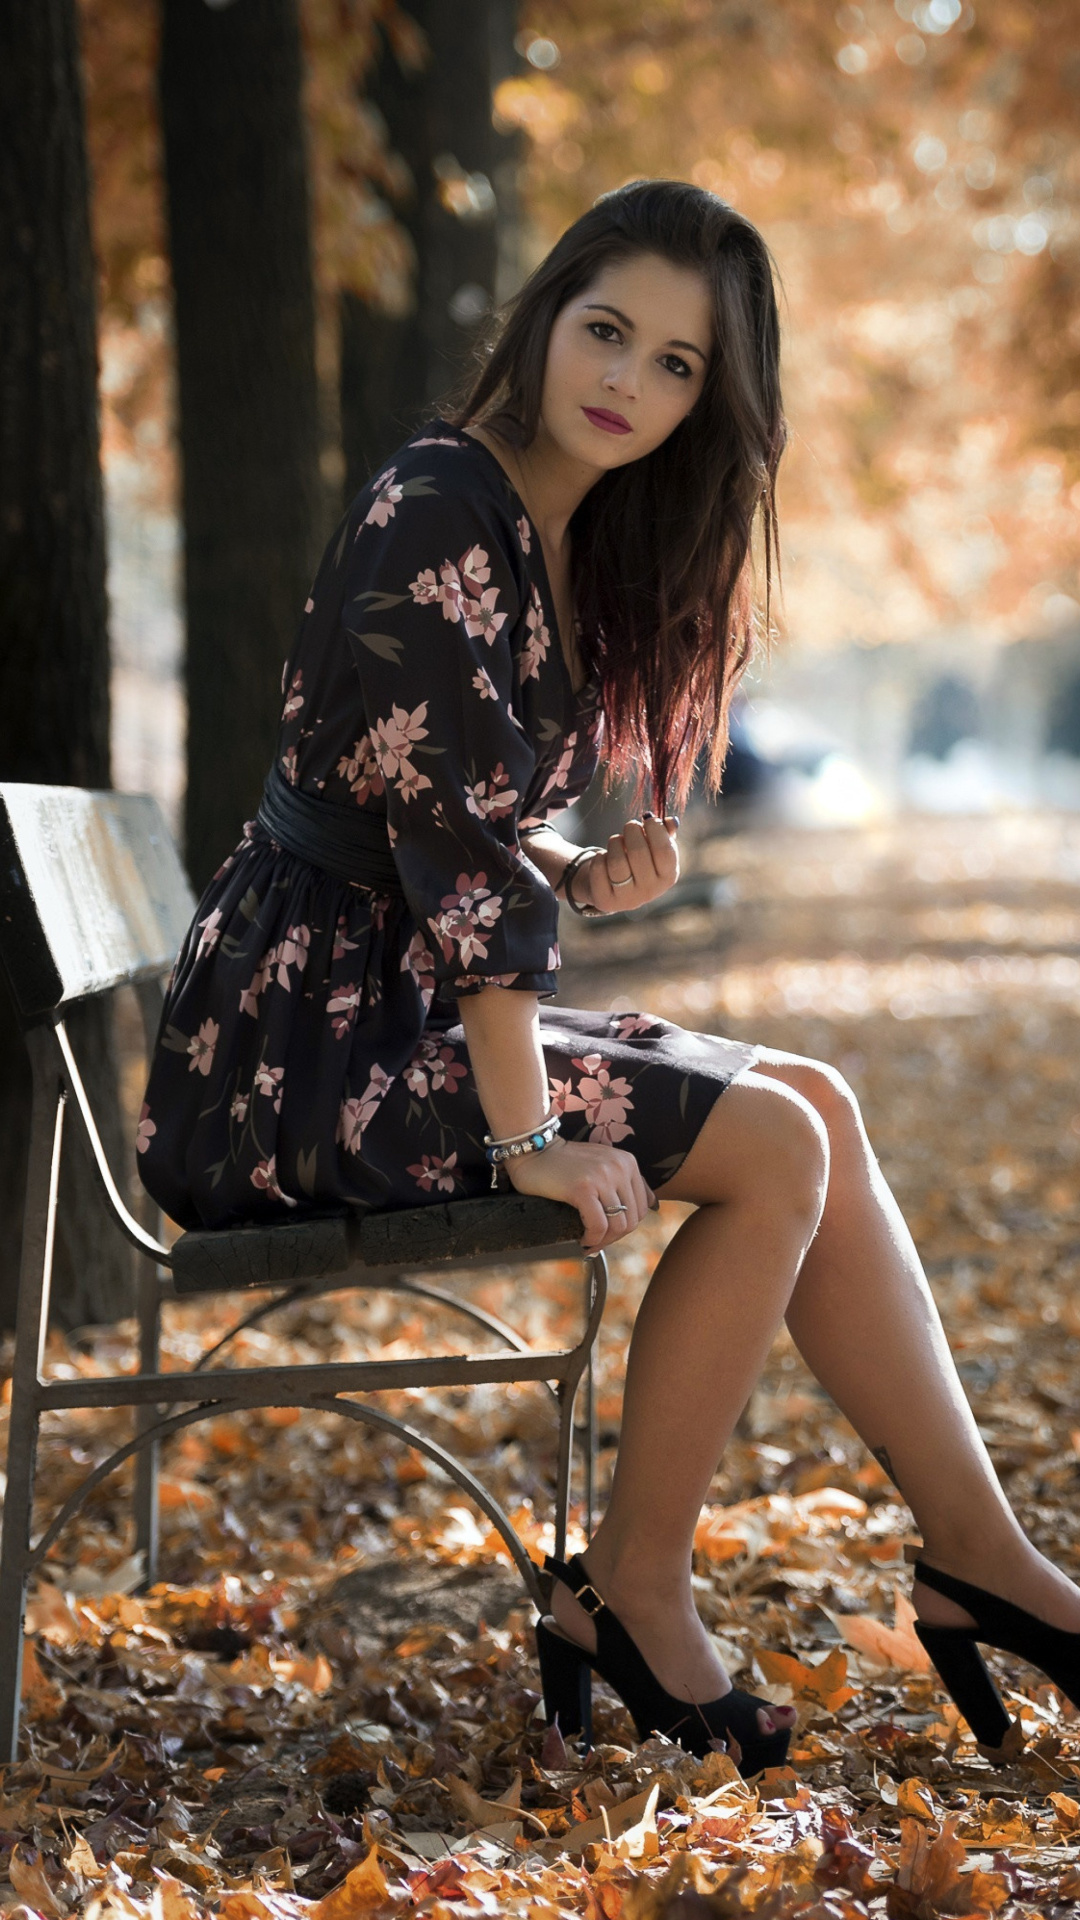 Caucasian joy girl in autumn park screenshot #1 1080x1920